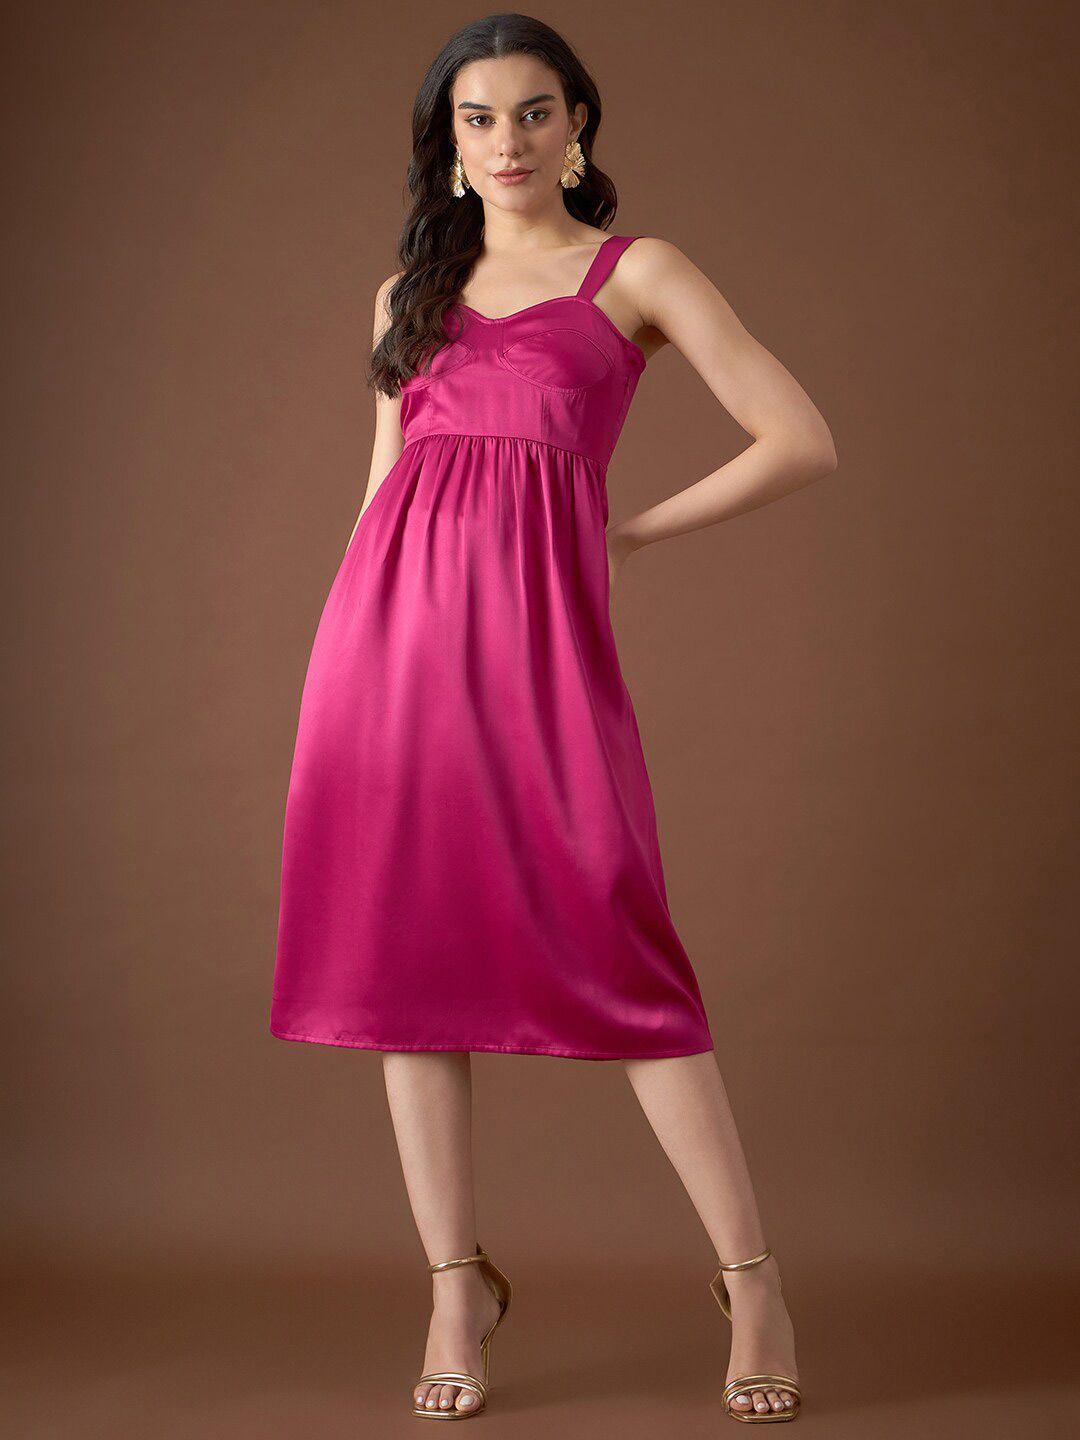 mabish by sonal jain pink satin dress